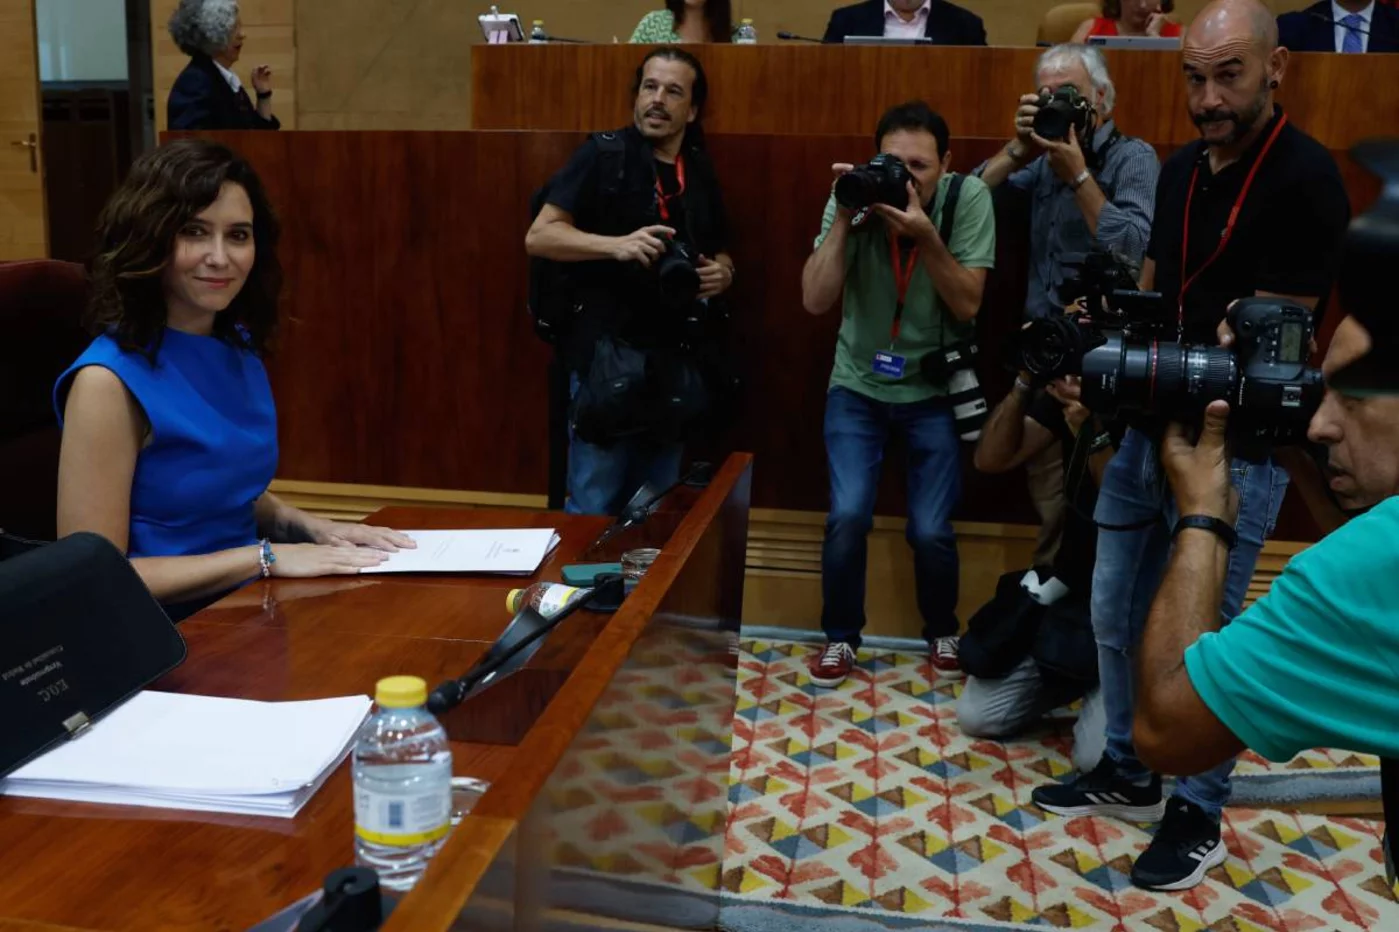  La presidenta de la Comunidad de Madrid, Isabel Díaz Ayuso, sonríe durante la primera sesión del debate del estado de la región en la Asamblea de Madrid, este lunes. Foto: EFE/ J.J. GUILLÉN